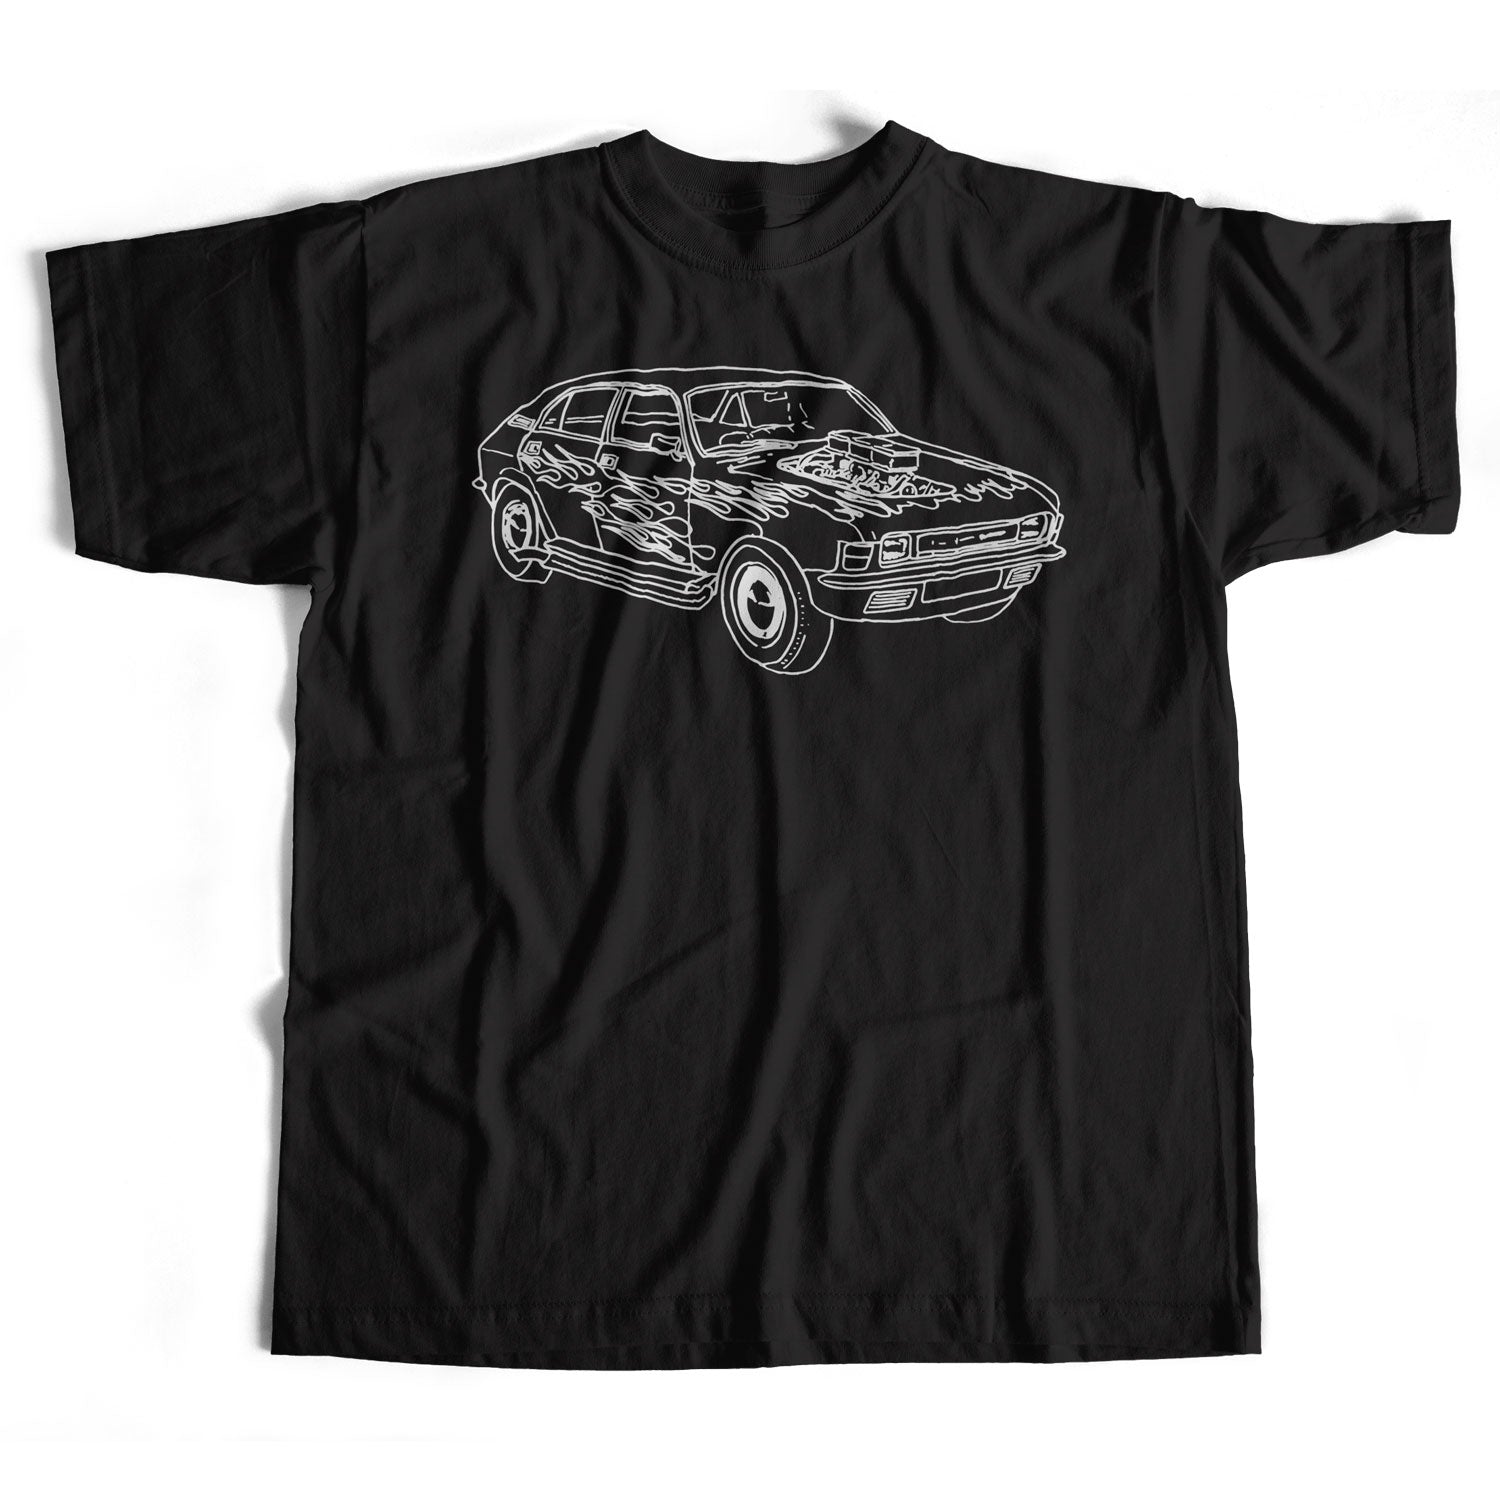 Old Skool Hooligans Austin Allegro T Shirt - Hot Rod Rat Rod Custom Car Sketch